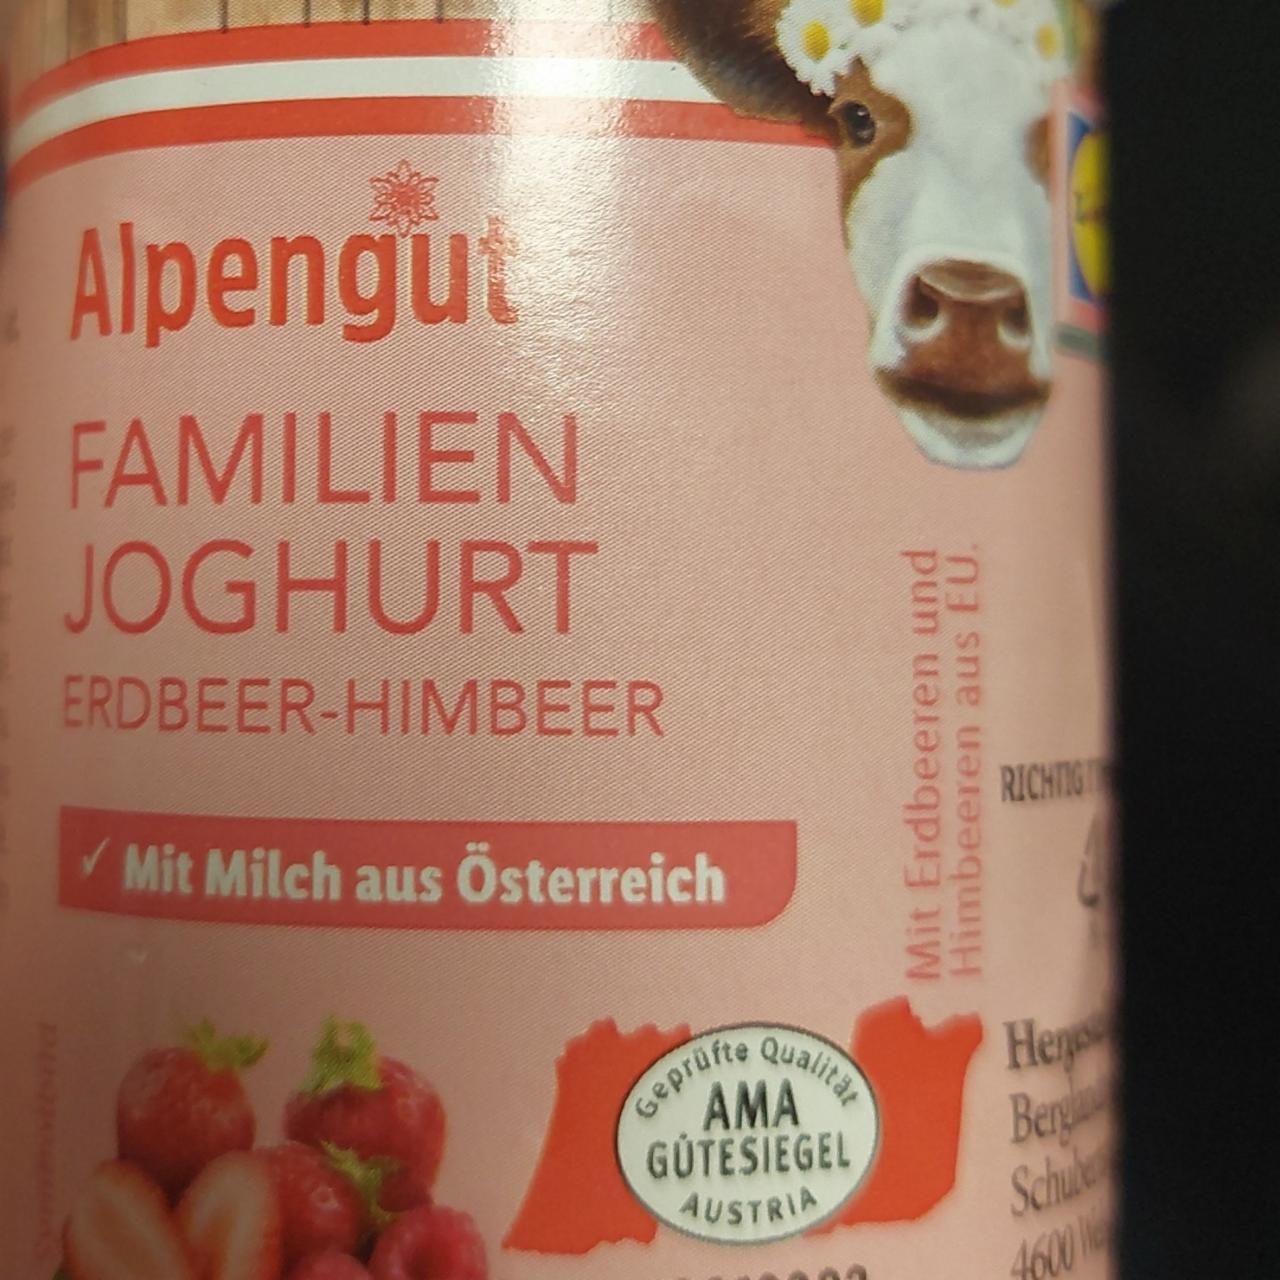 Fotografie - Familien Joghurt Erdbeer-Himbeer Alpengut